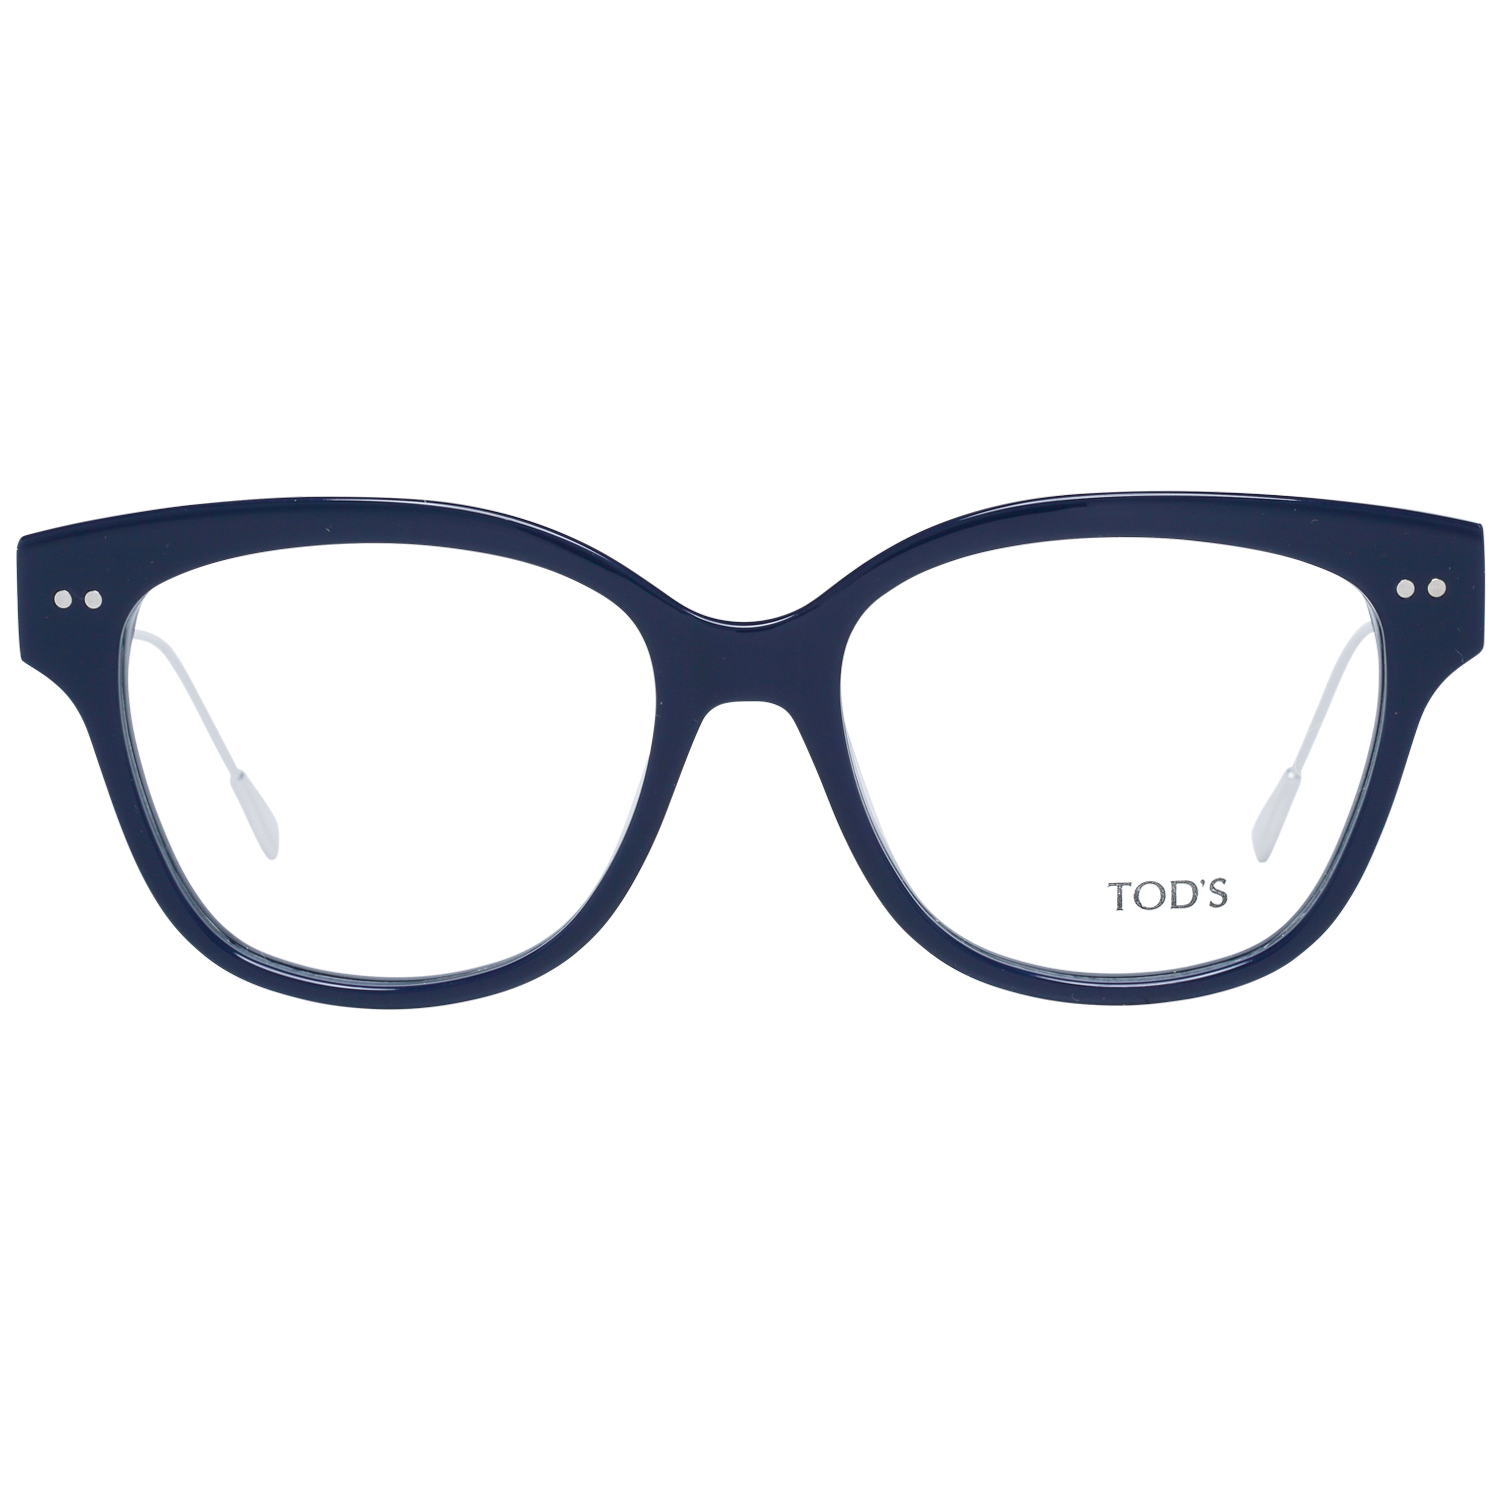 Tods Frames Tods Glasses Women's Blue Round Frames TO5191 090 53mm Eyeglasses Eyewear UK USA Australia 